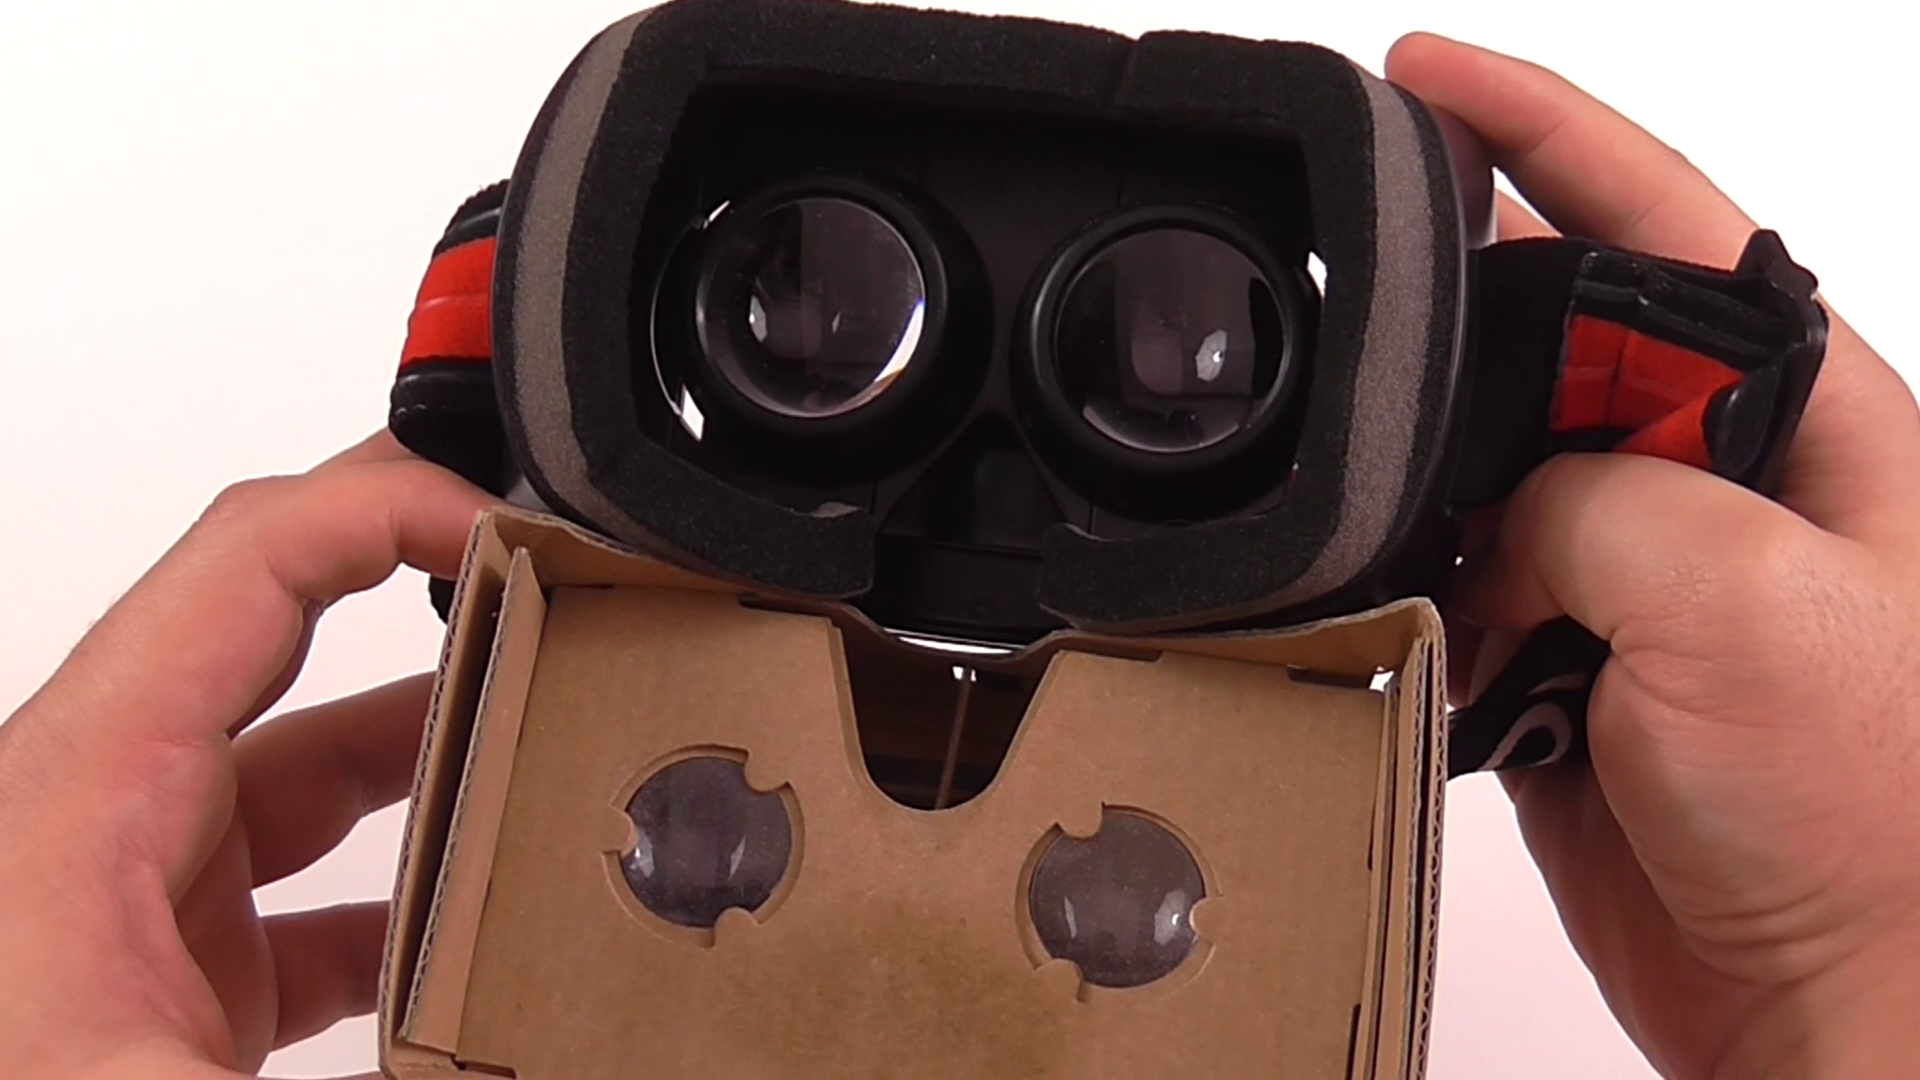 Homido VR vs Google Cardboard VR